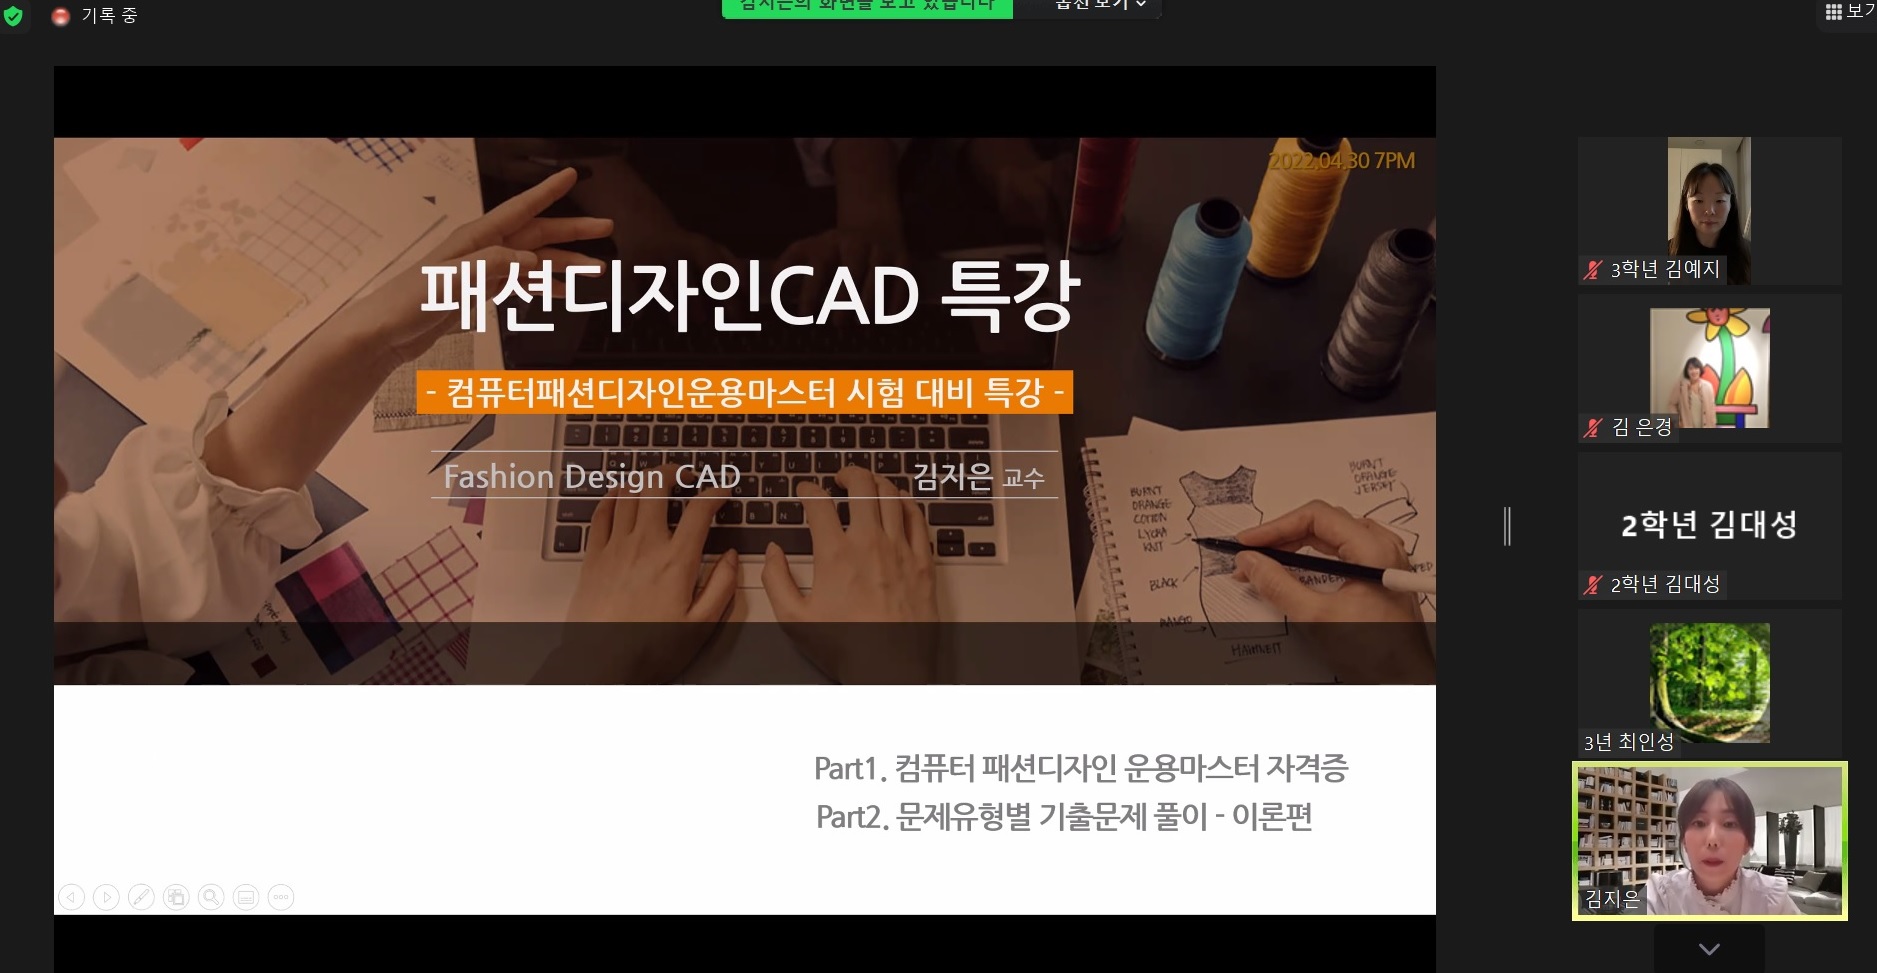 [패션학과] 학과장 상담 및 패션디자인캐드 온라인 특강 후기